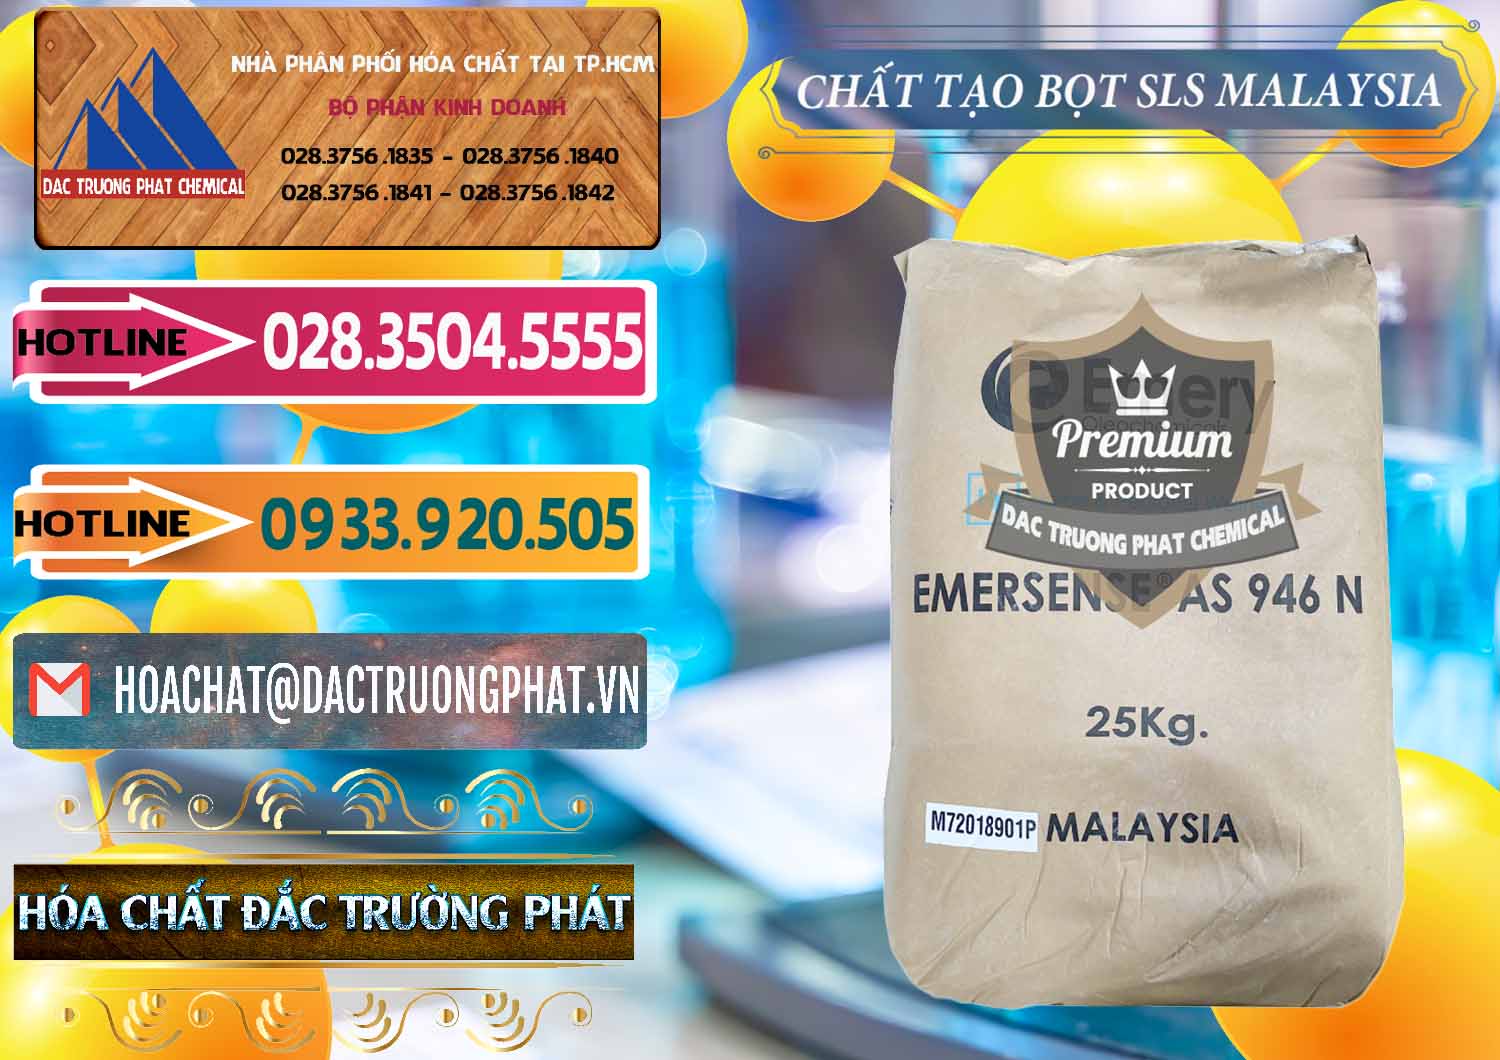 Nơi chuyên bán và phân phối Chất Tạo Bọt SLS Emery - Emersense AS 946N Mã Lai Malaysia - 0423 - Đơn vị chuyên bán và cung cấp hóa chất tại TP.HCM - dactruongphat.vn